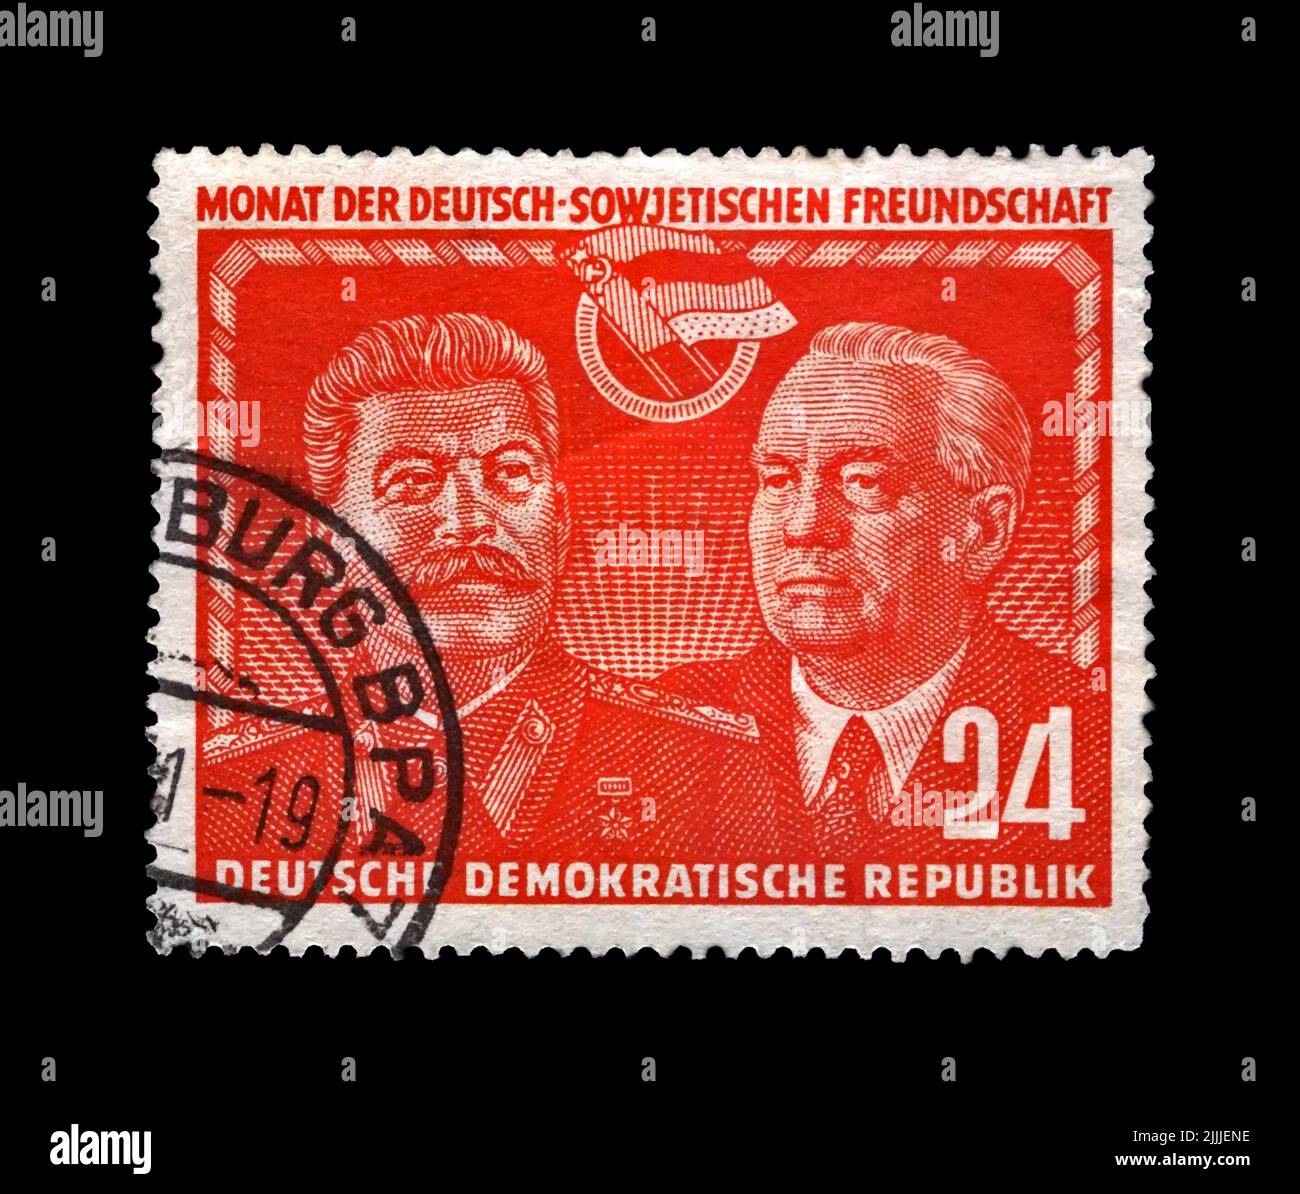 Abgesagte Briefmarke, gedruckt in der DDR, zeigt Joseph Stalin und Wilhelm Pieck, berühmten sowjetischen und deutschen Politiker-Führer, um 1951. Stockfoto